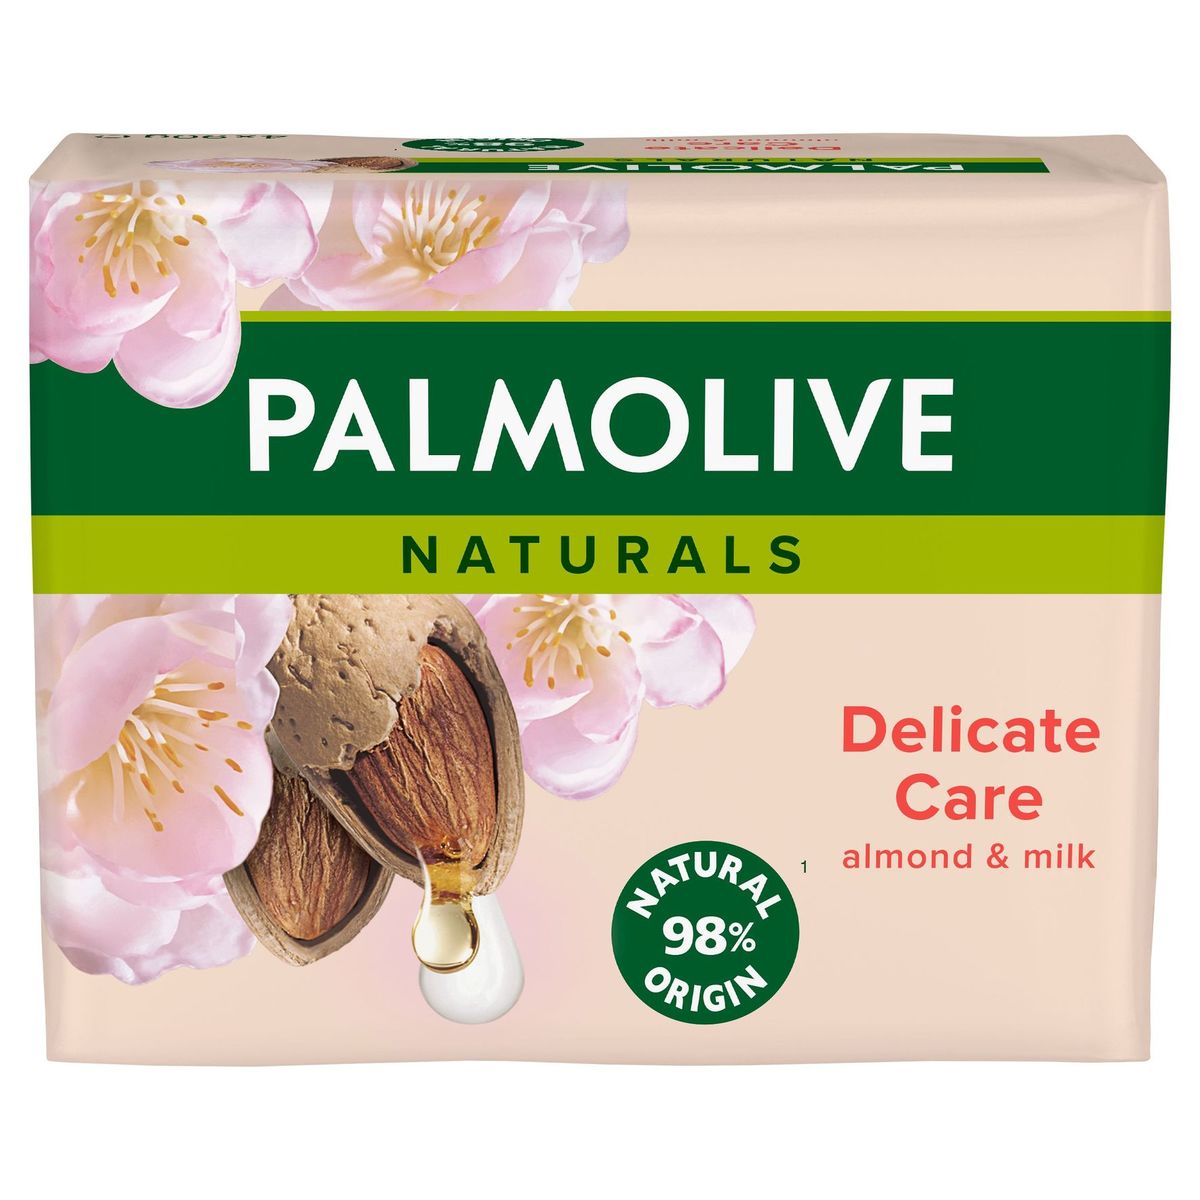 Savon solide Palmolive Naturals Amande - 4x90g